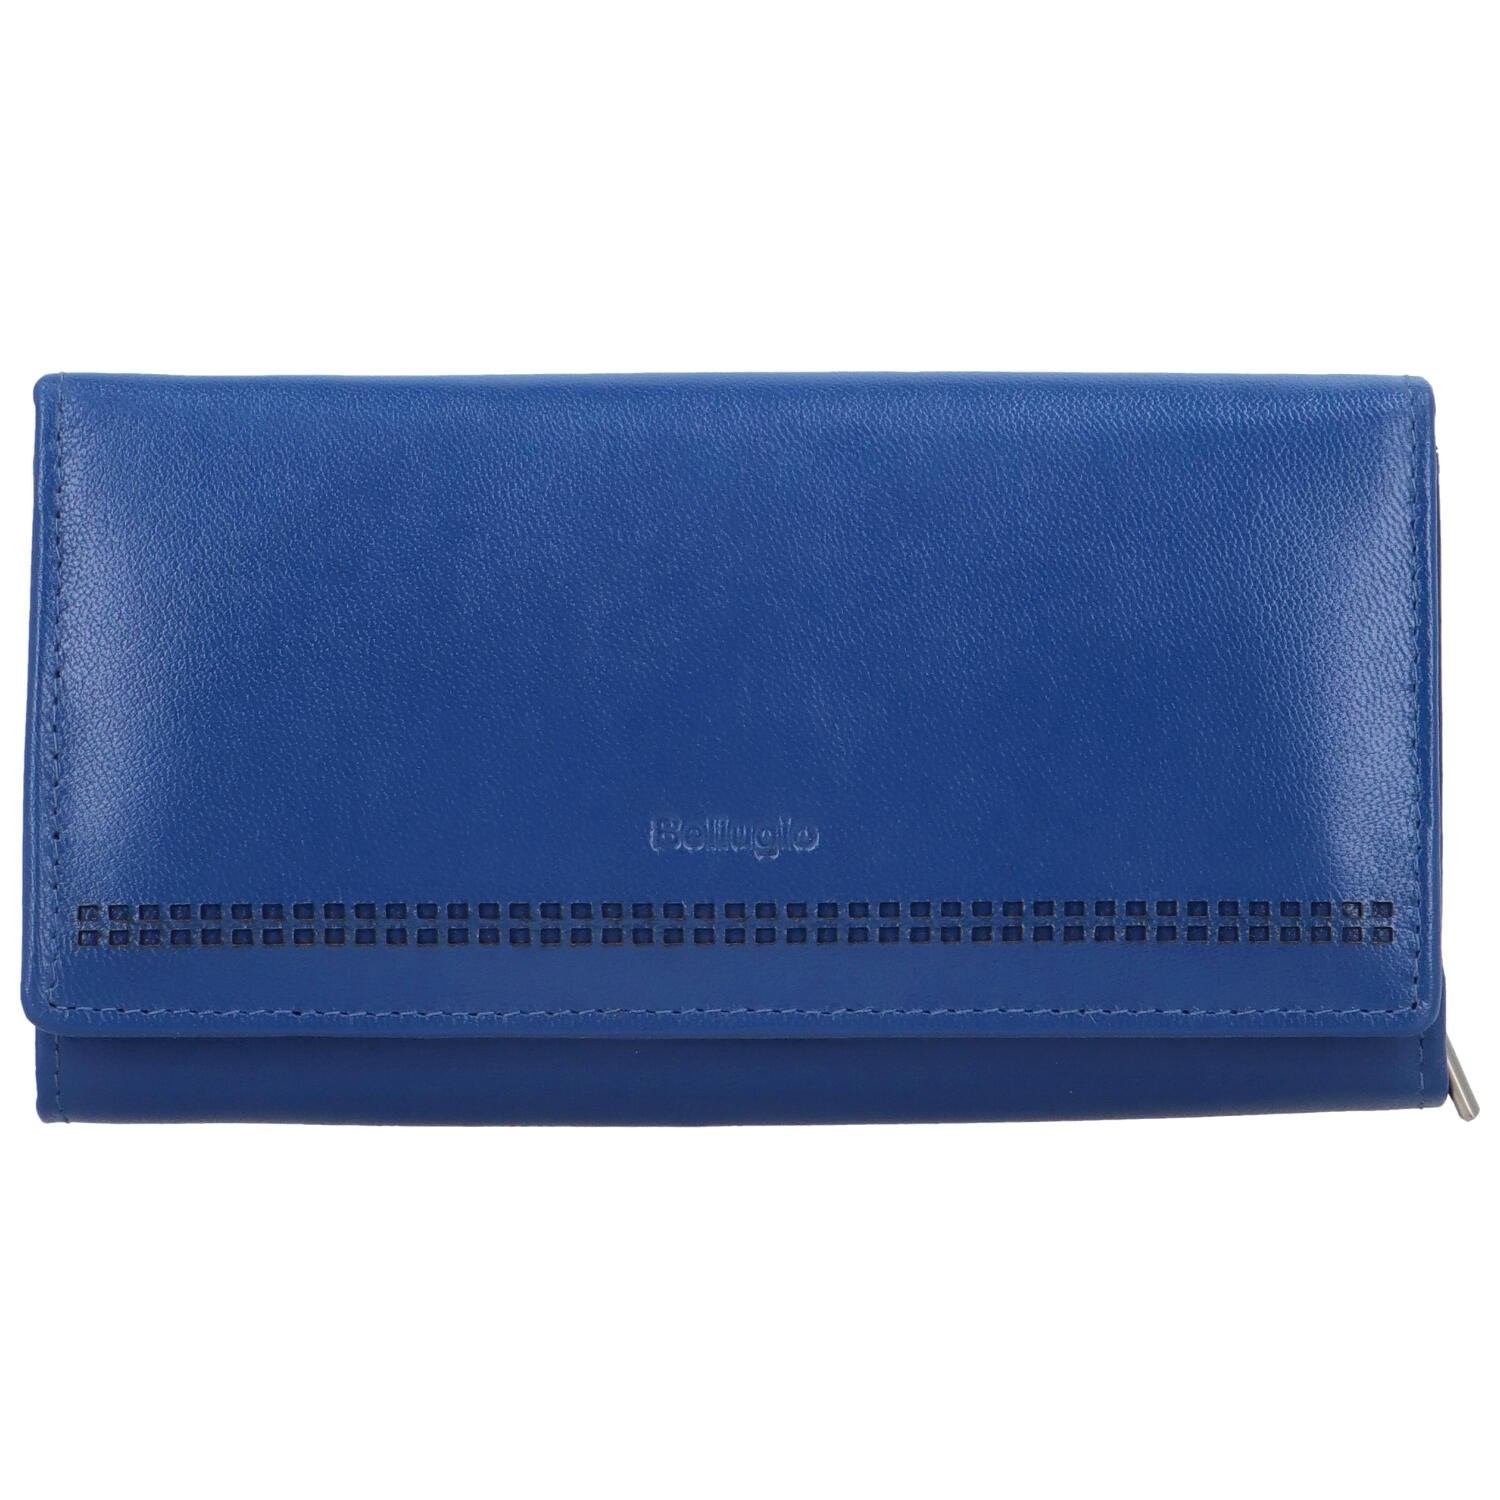 Dámská kožená peněženka tmavě modrá - Bellugio Reanda tmavě modrá